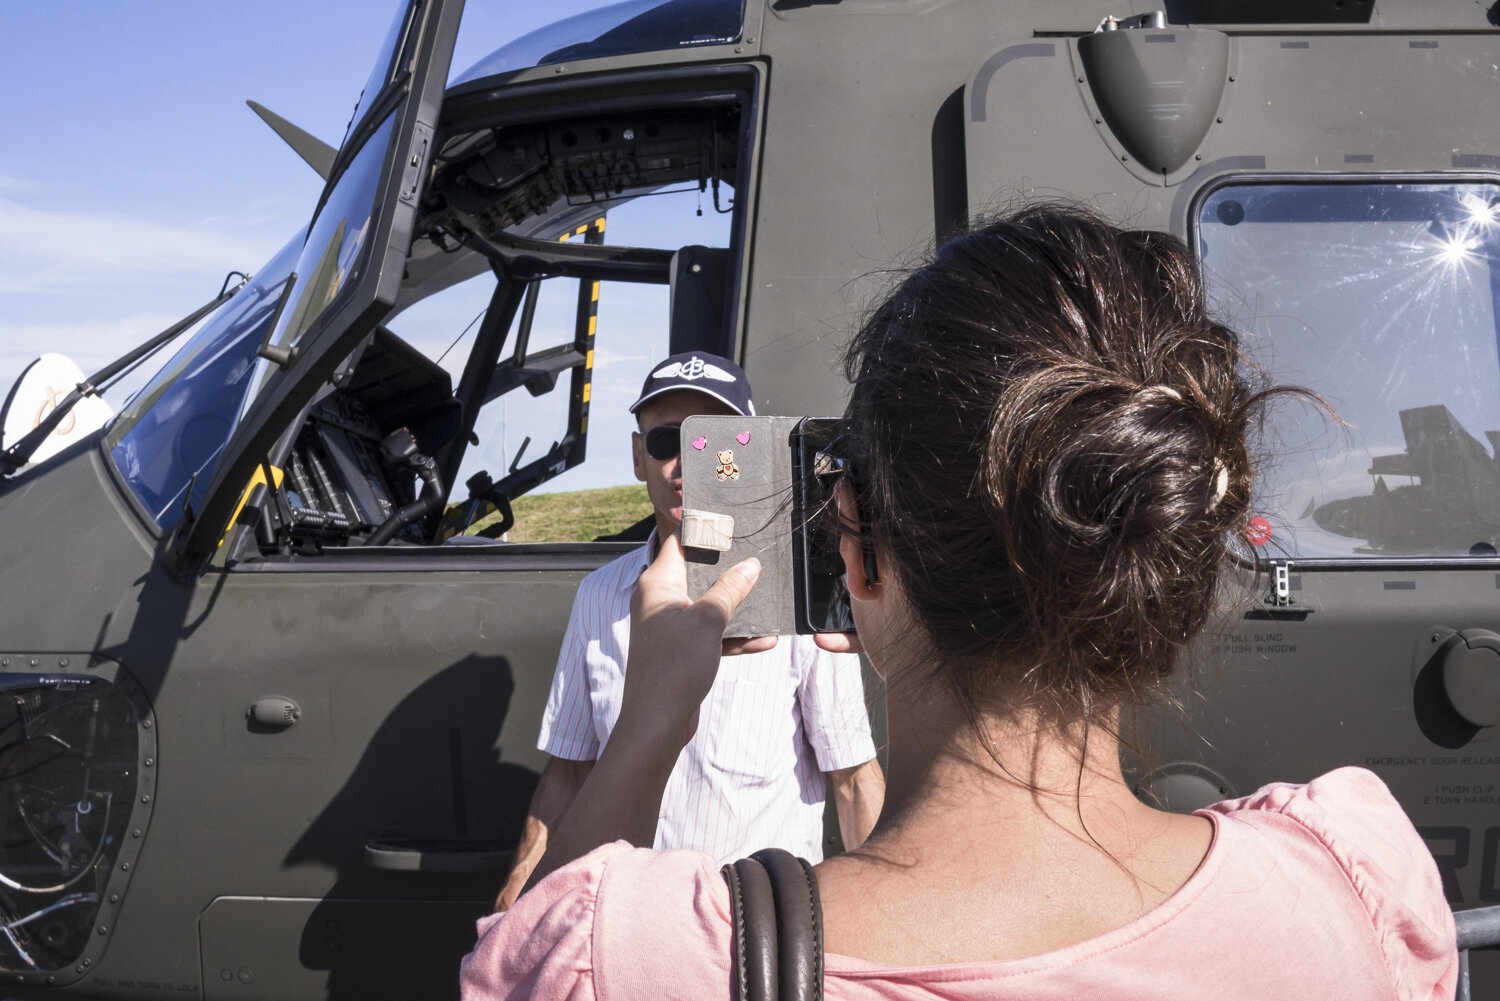 Séance photo-souvenir devant un hélicoptère de guerreSéance photo-souvenir devant un hélicoptère de guerre